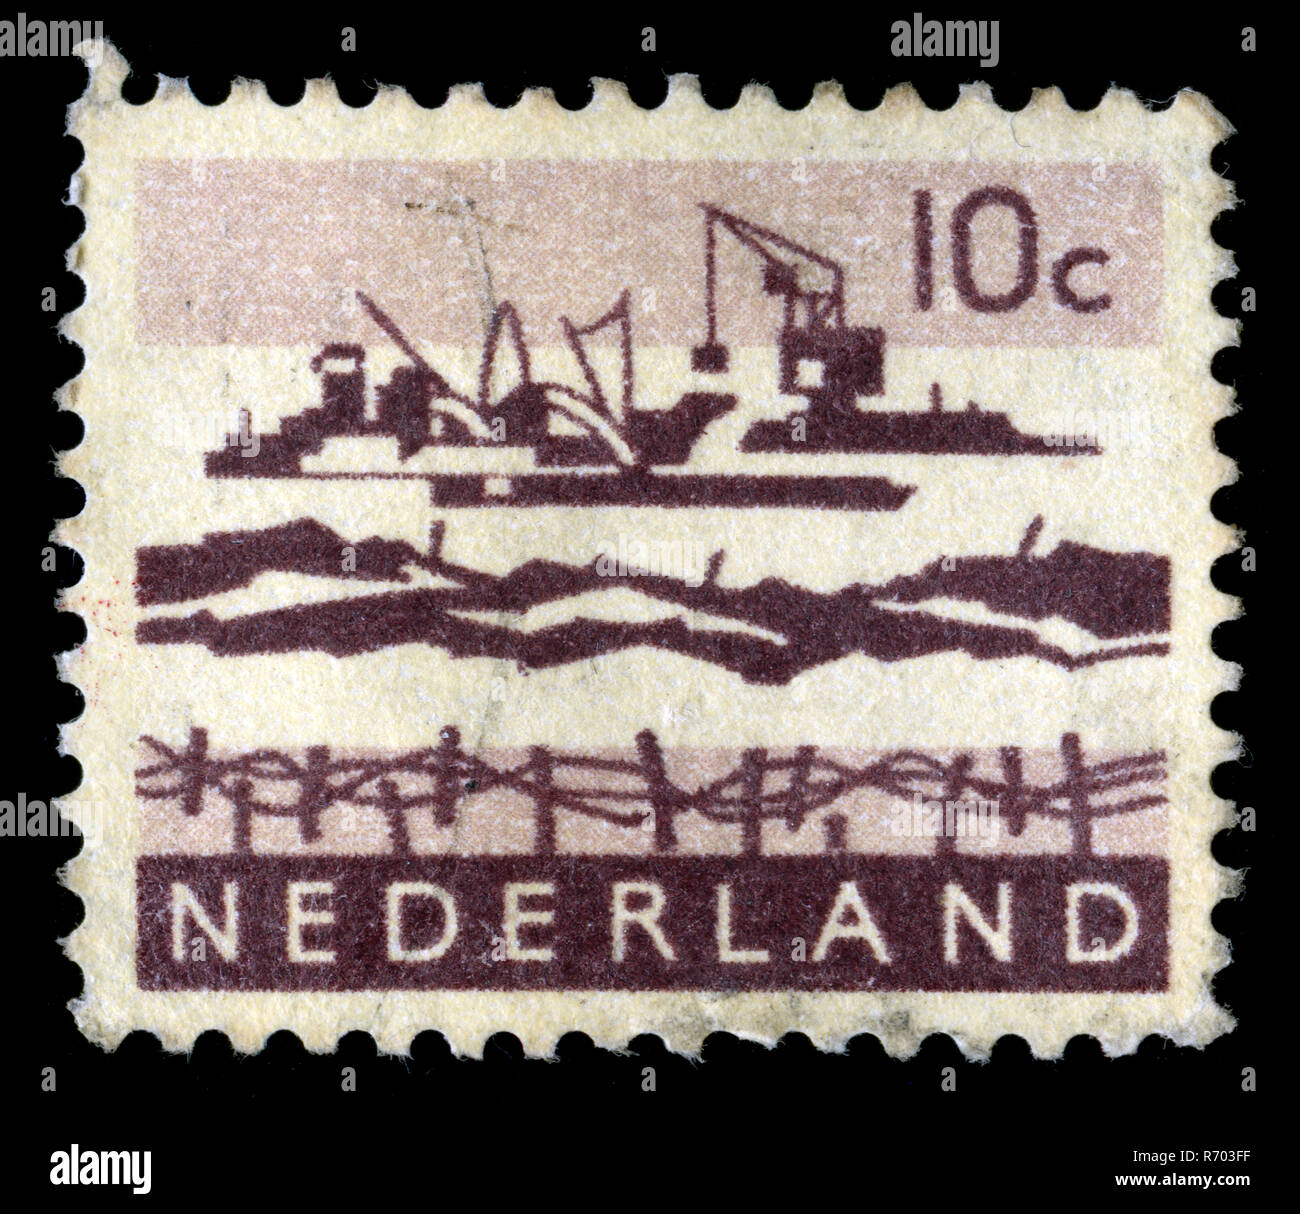 Timbre-poste des Pays-Bas dans les paysages série émise en 1963 Banque D'Images